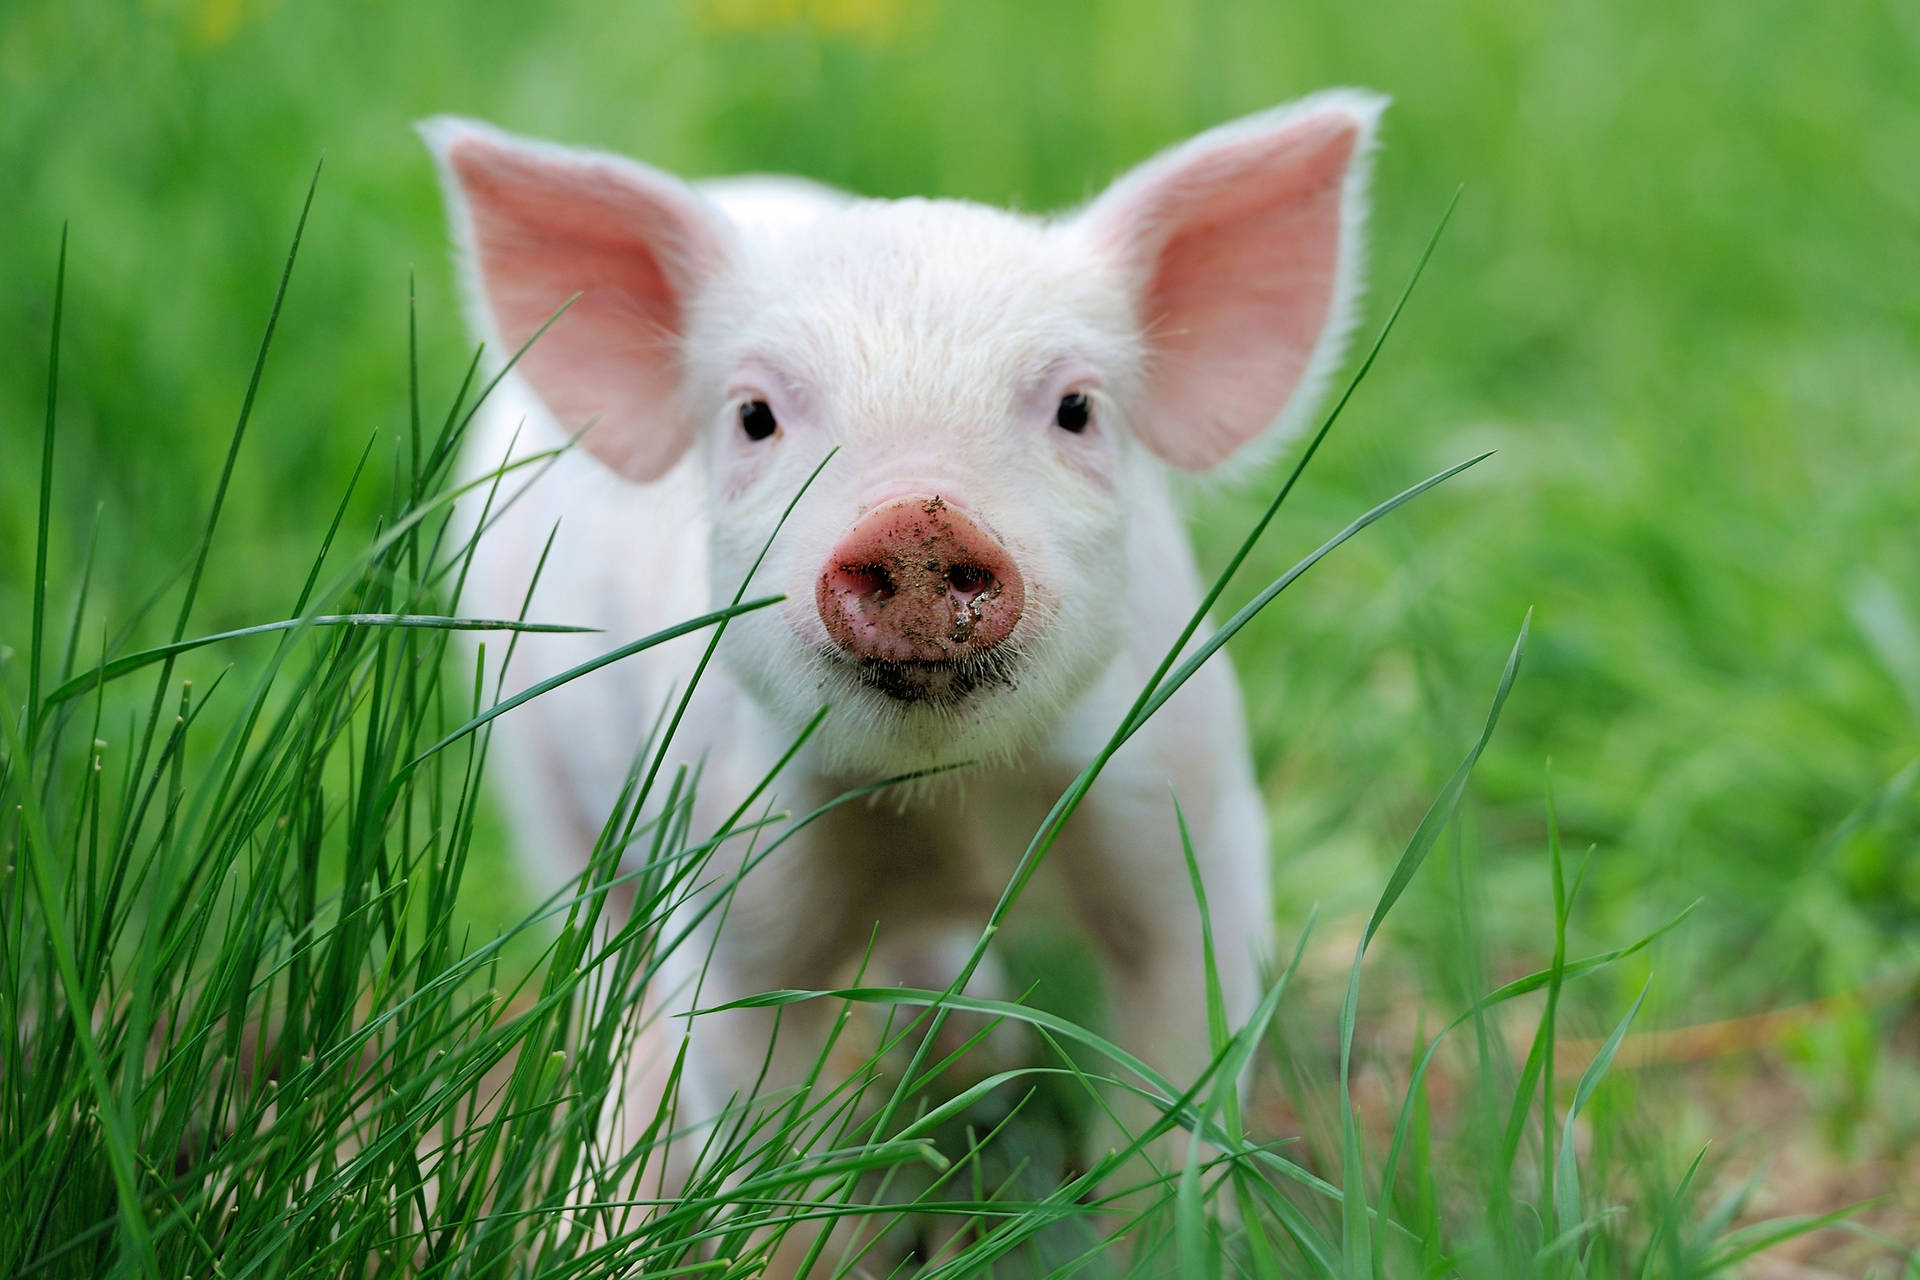 Pig Behind Green Grass